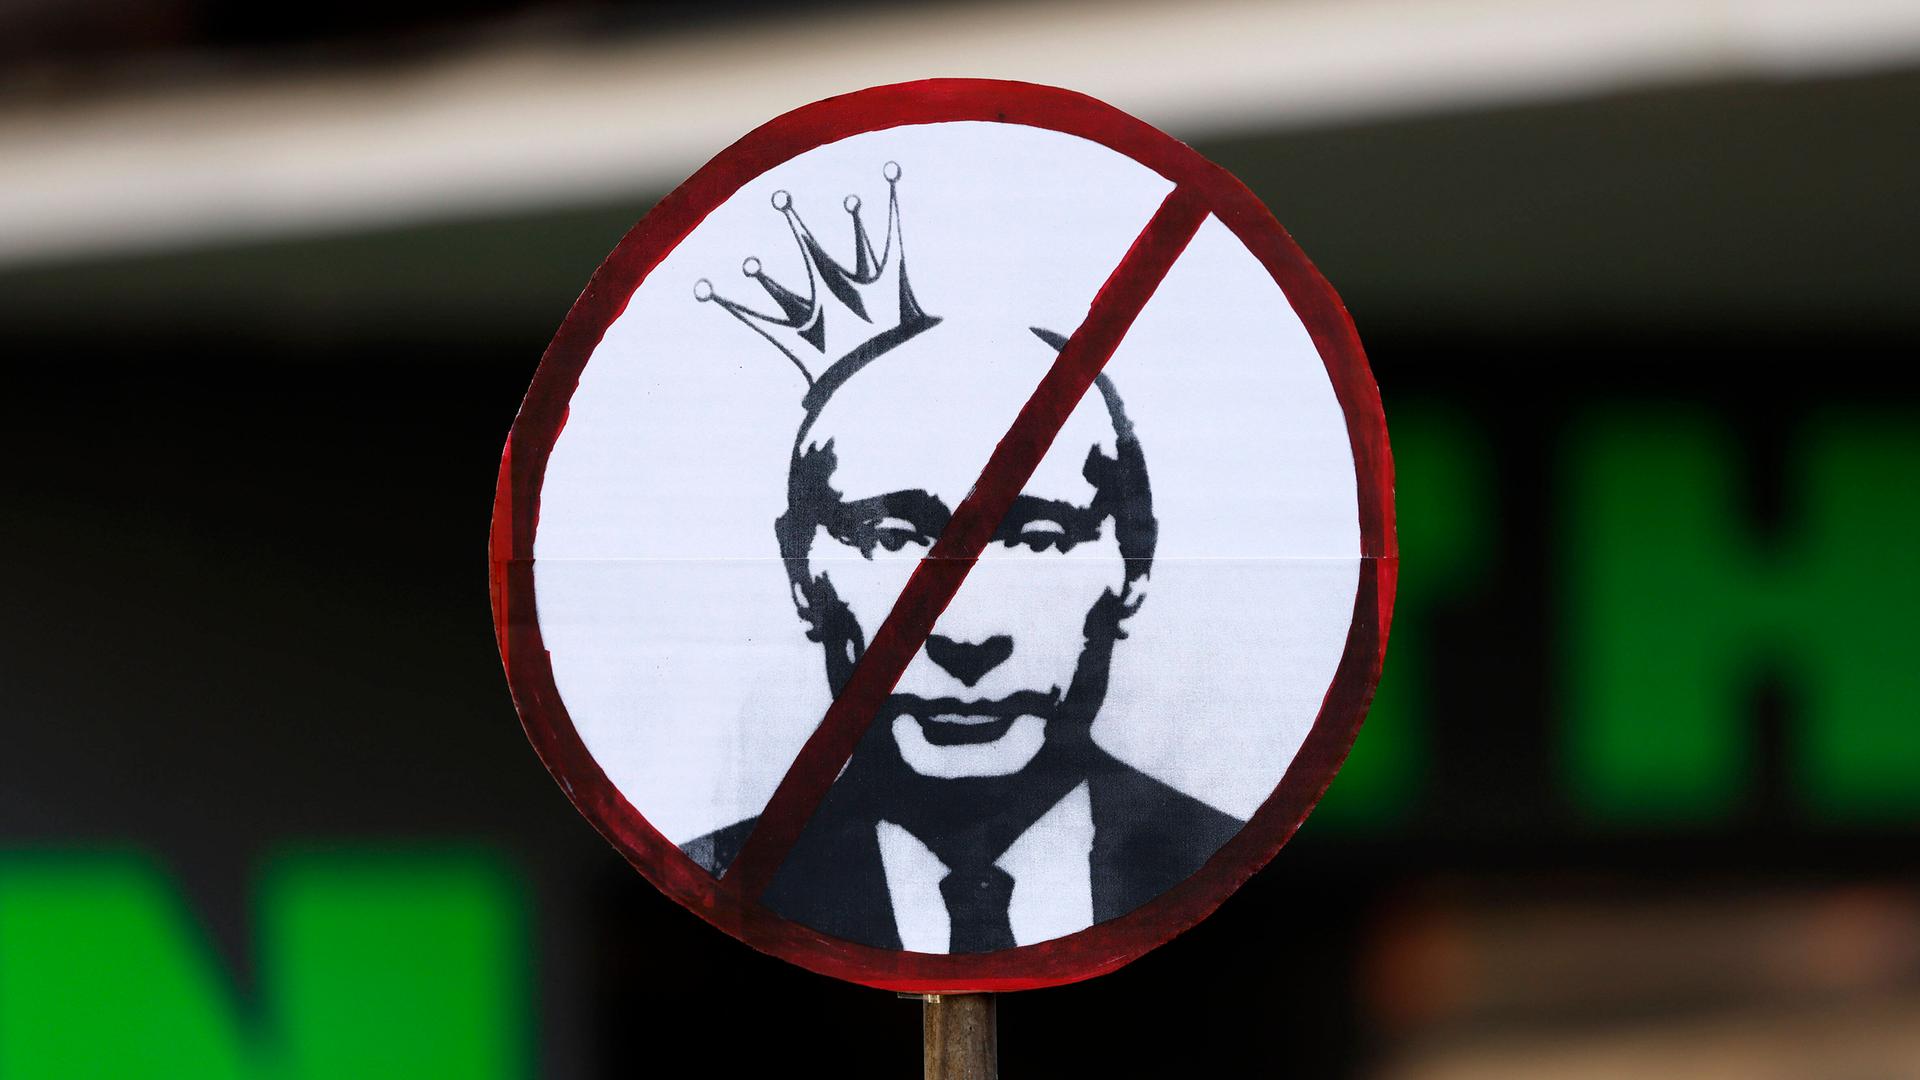 Ein Plakat auf einer Demo zeigt das durchgestrichene Gesicht von Vladimir Putin.